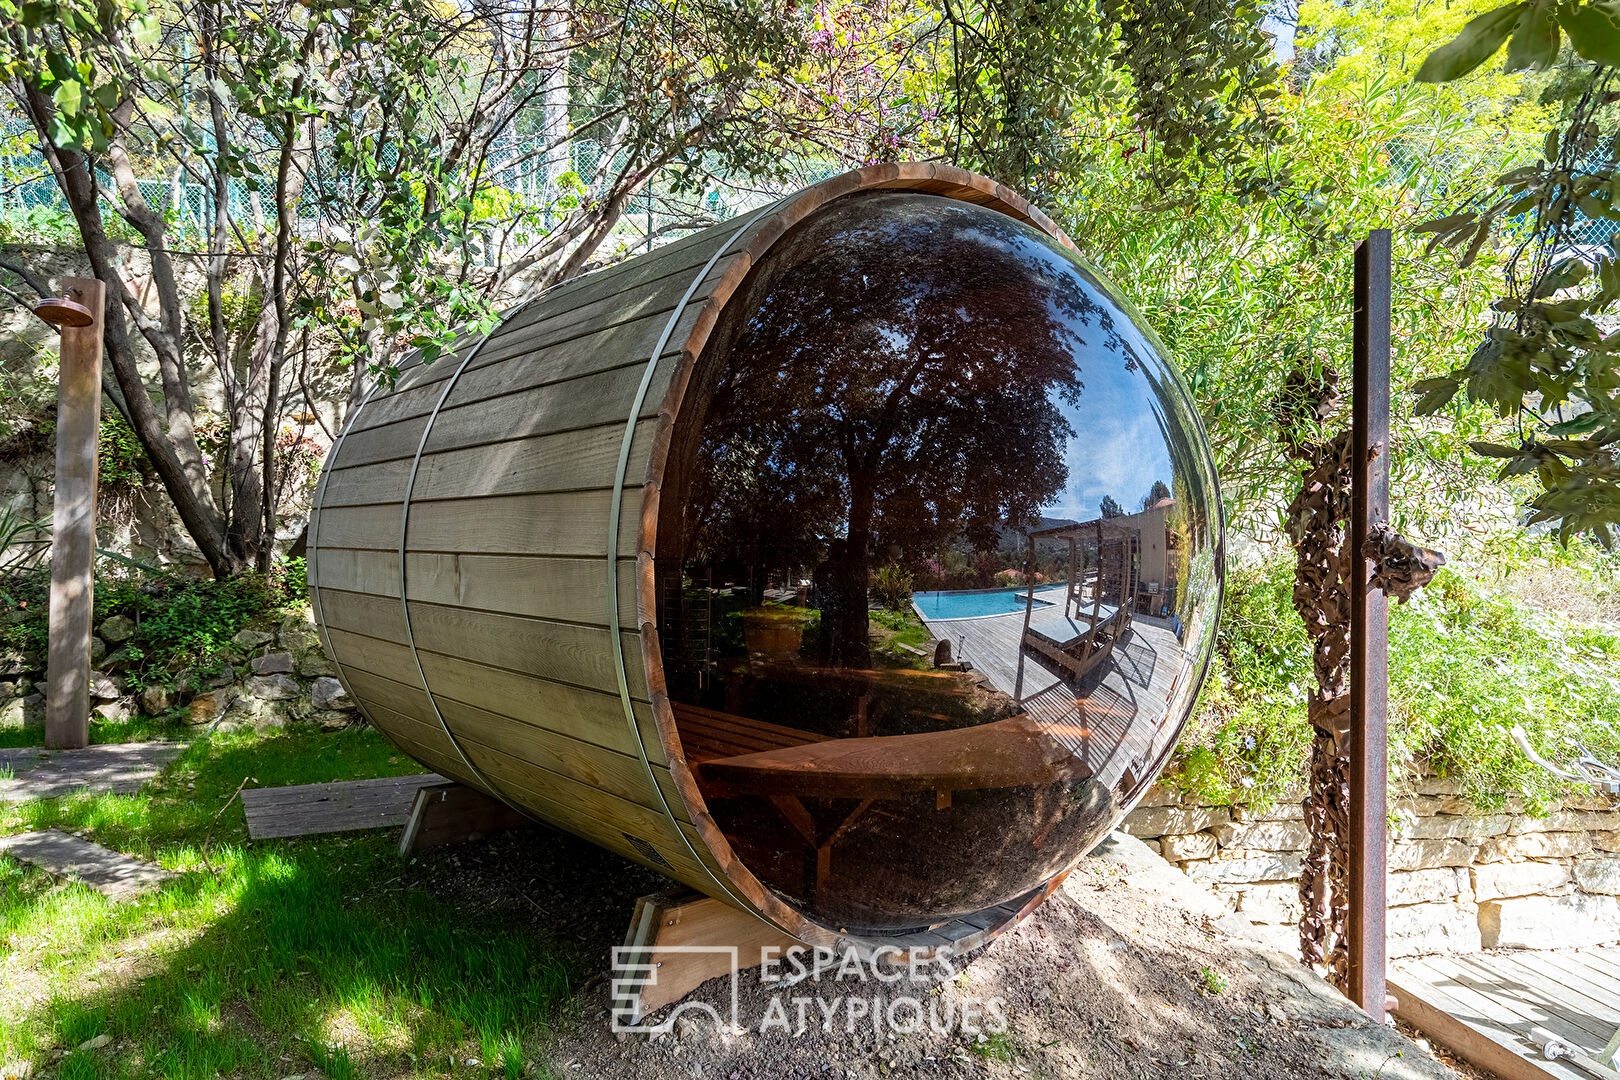 Villa moderne bohème chic en bois avec piscine à débordement